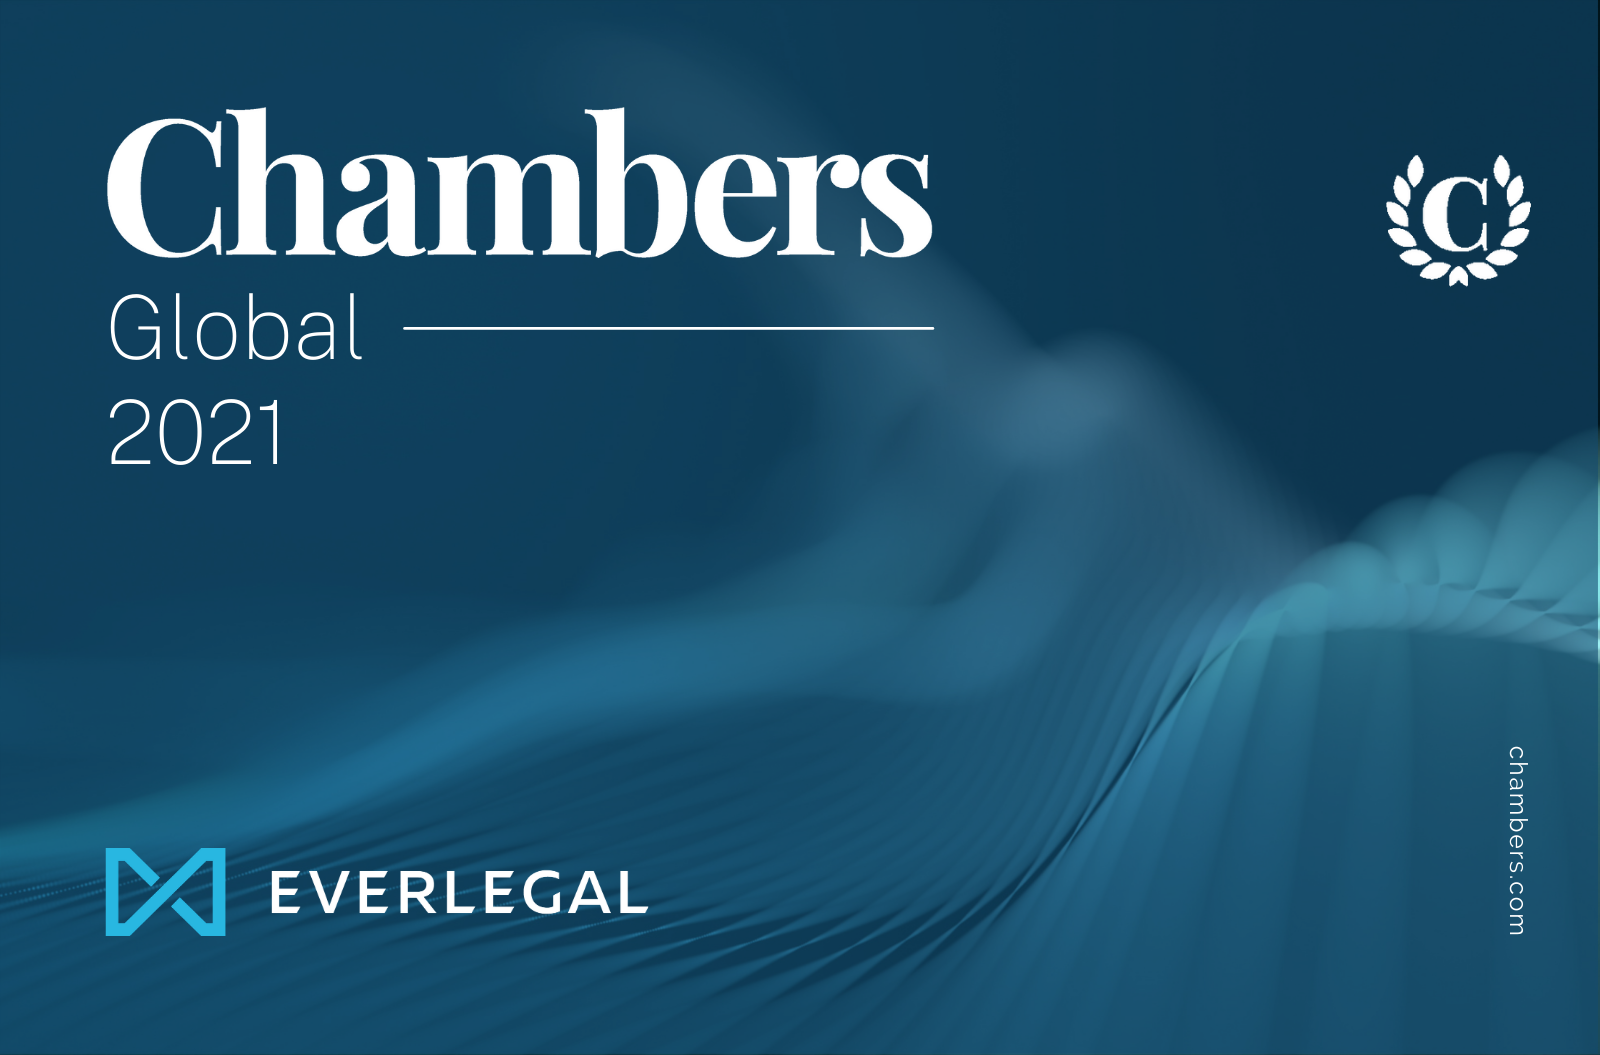 EVERLEGAL ranked by Chambers Global 2021